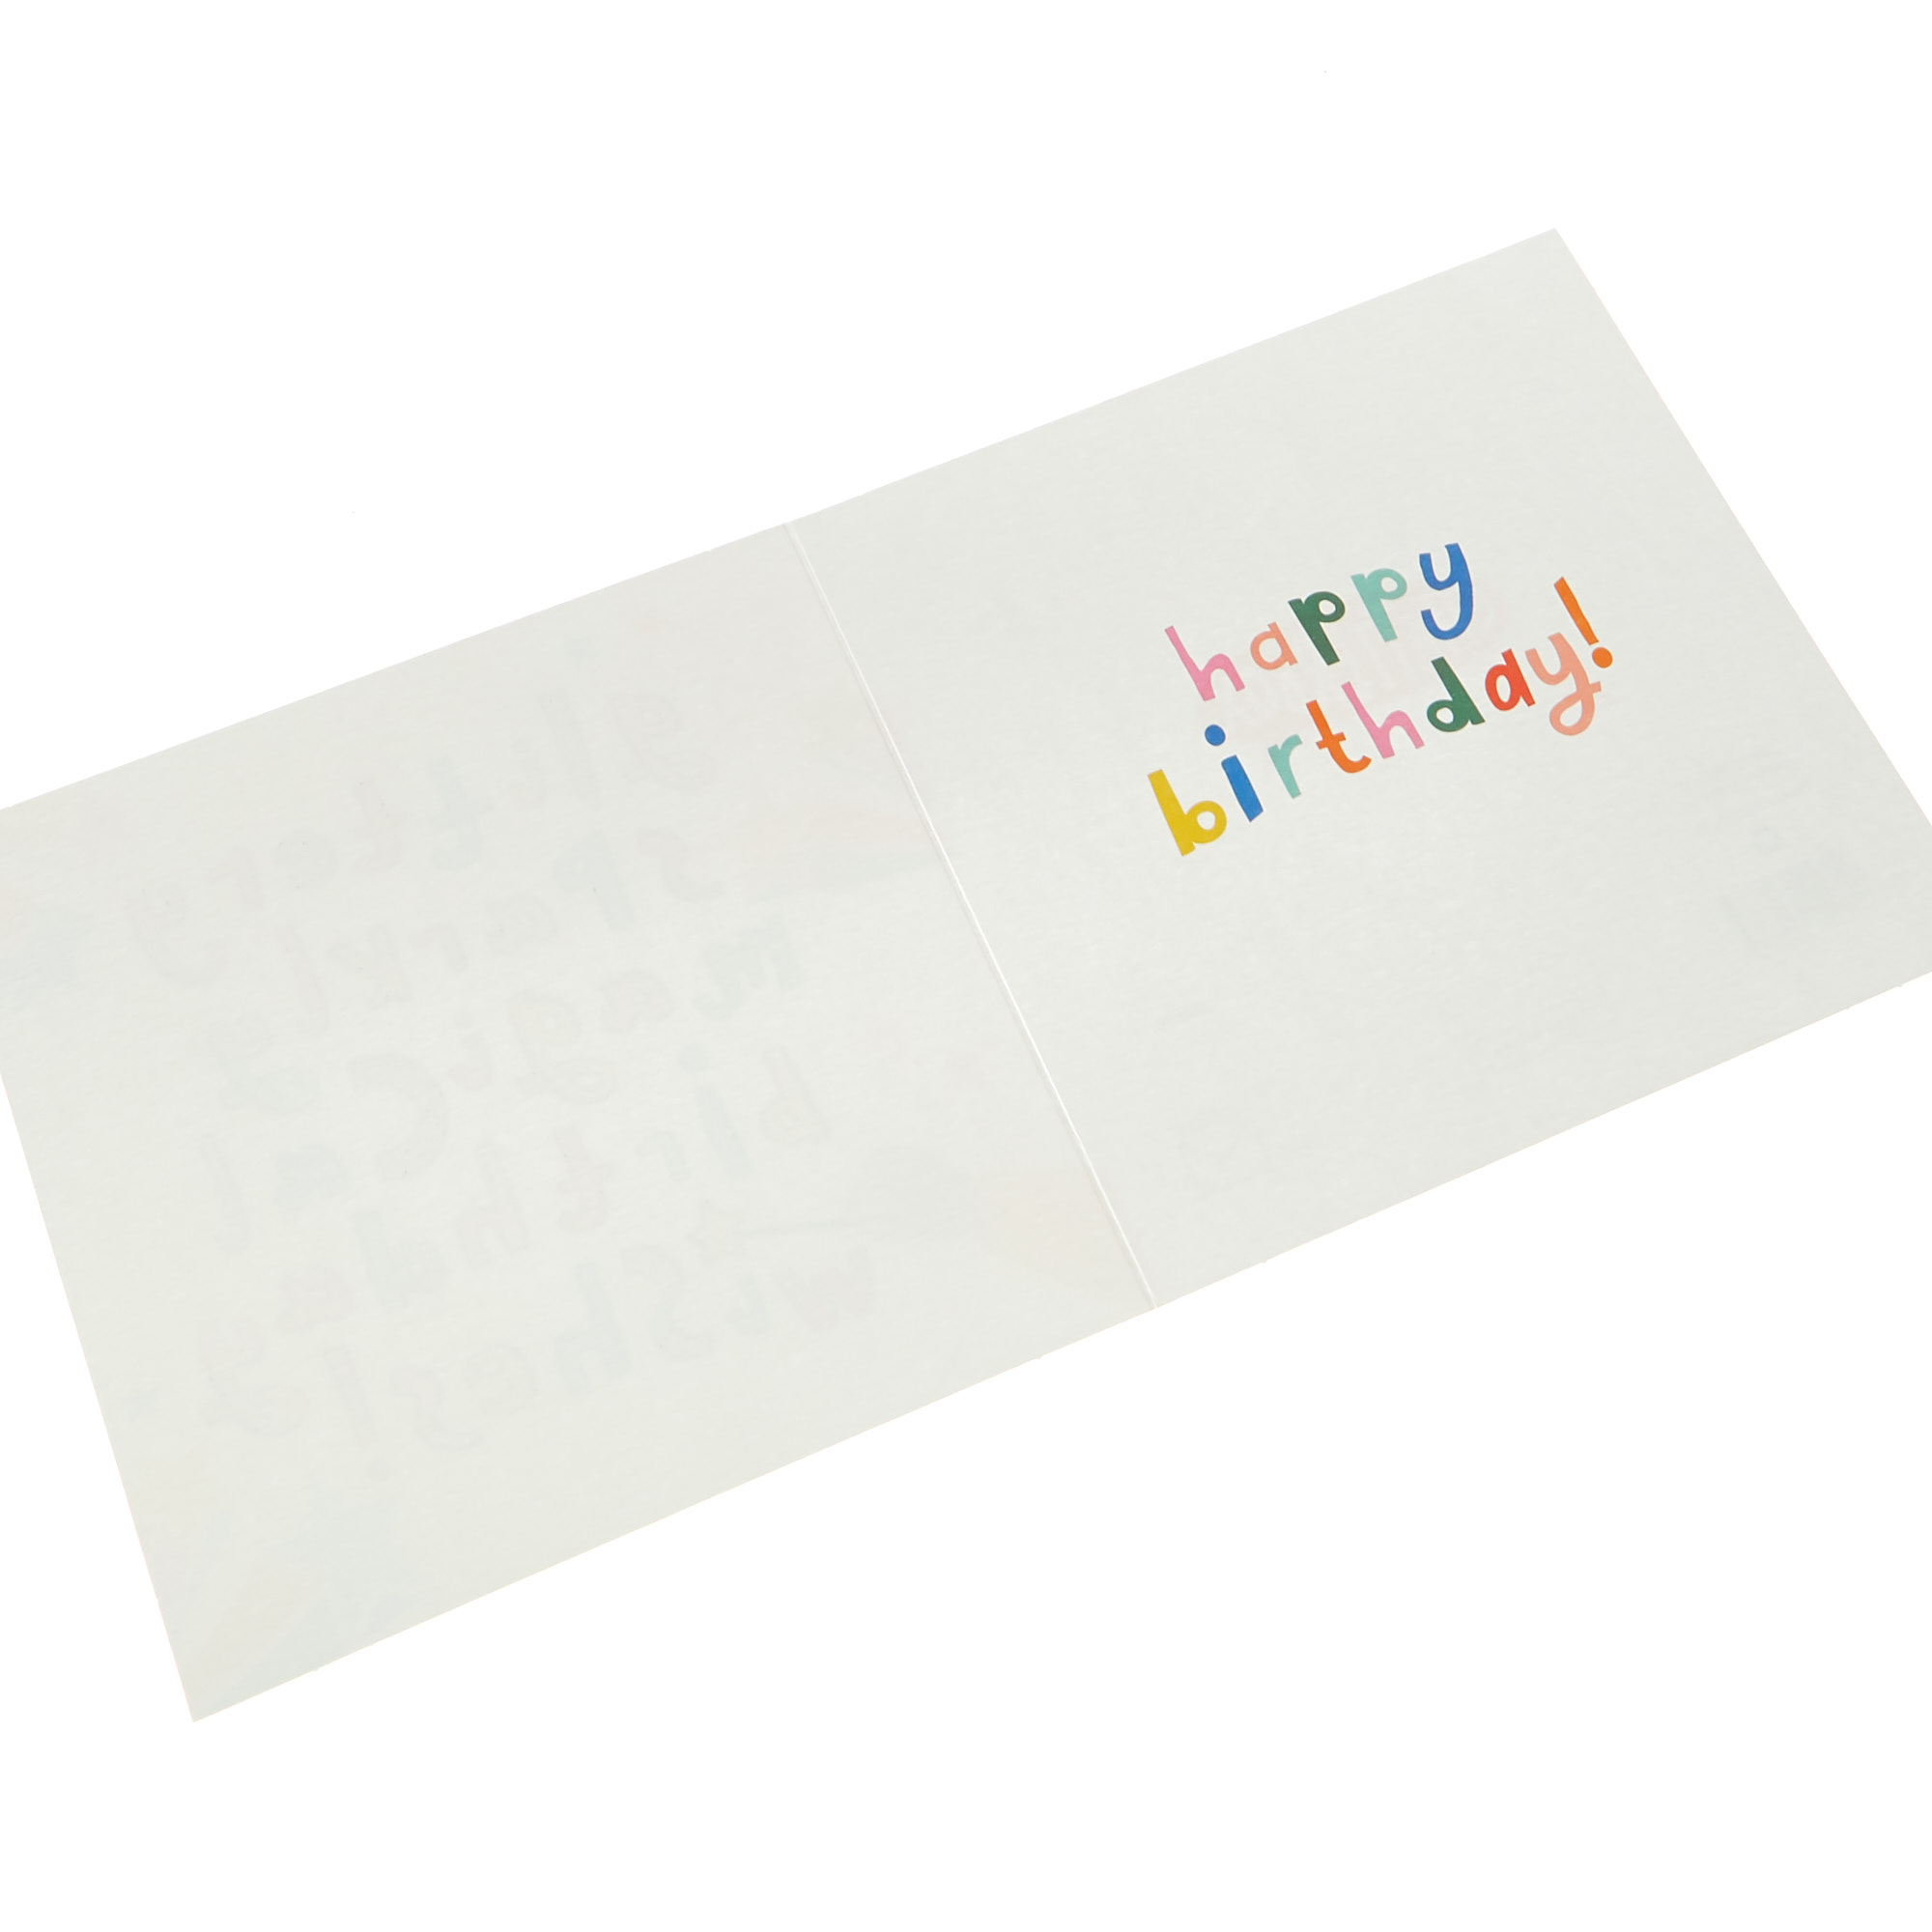 Birthday Card - Glittery Sparkly Magical